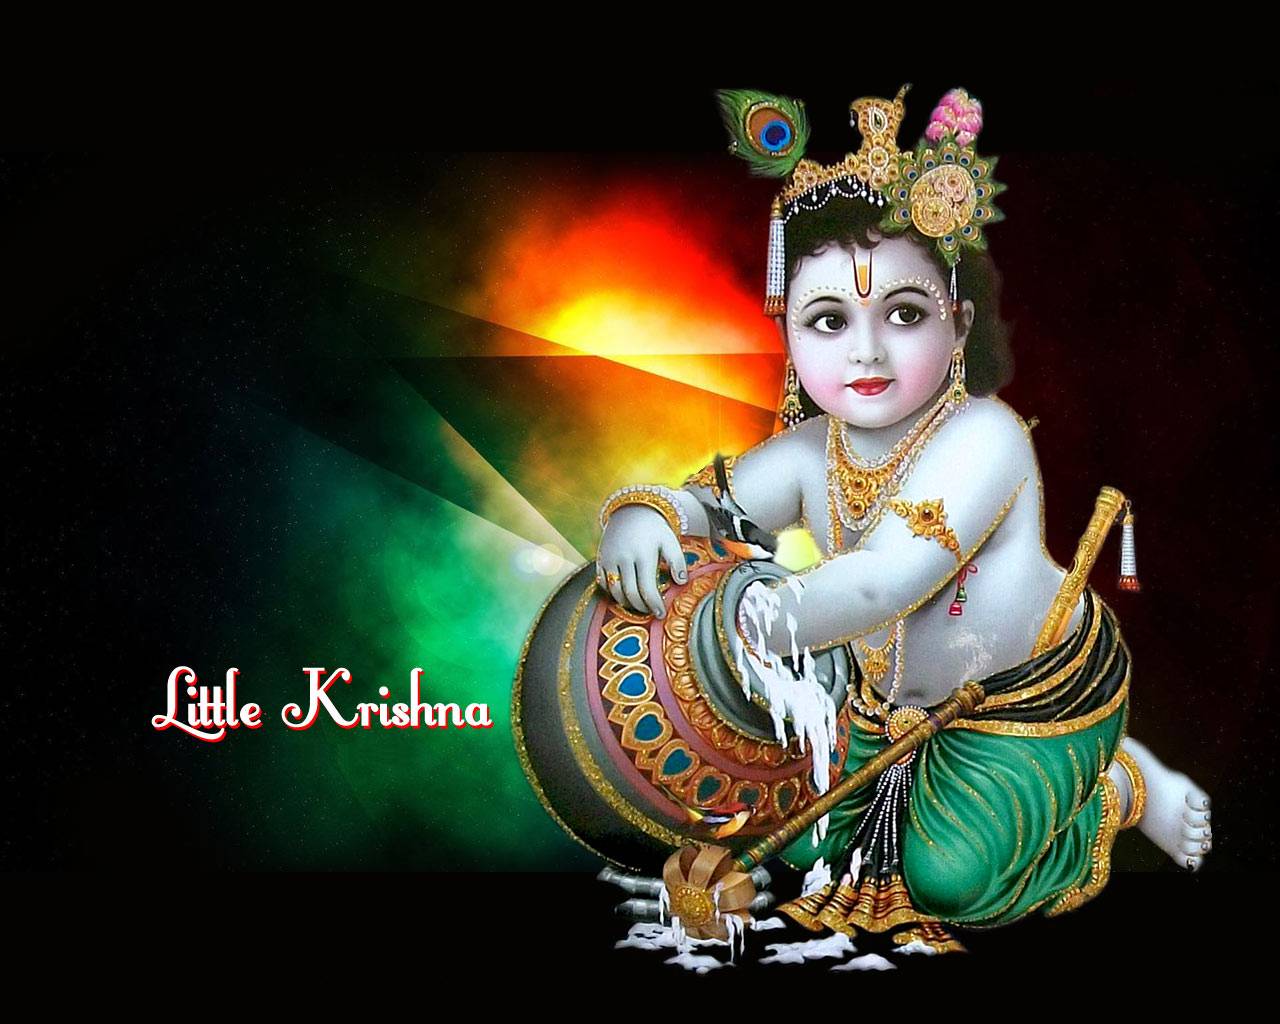 Baby Krishna Wallpaper Full Size Download. Lord Krishna. Latest